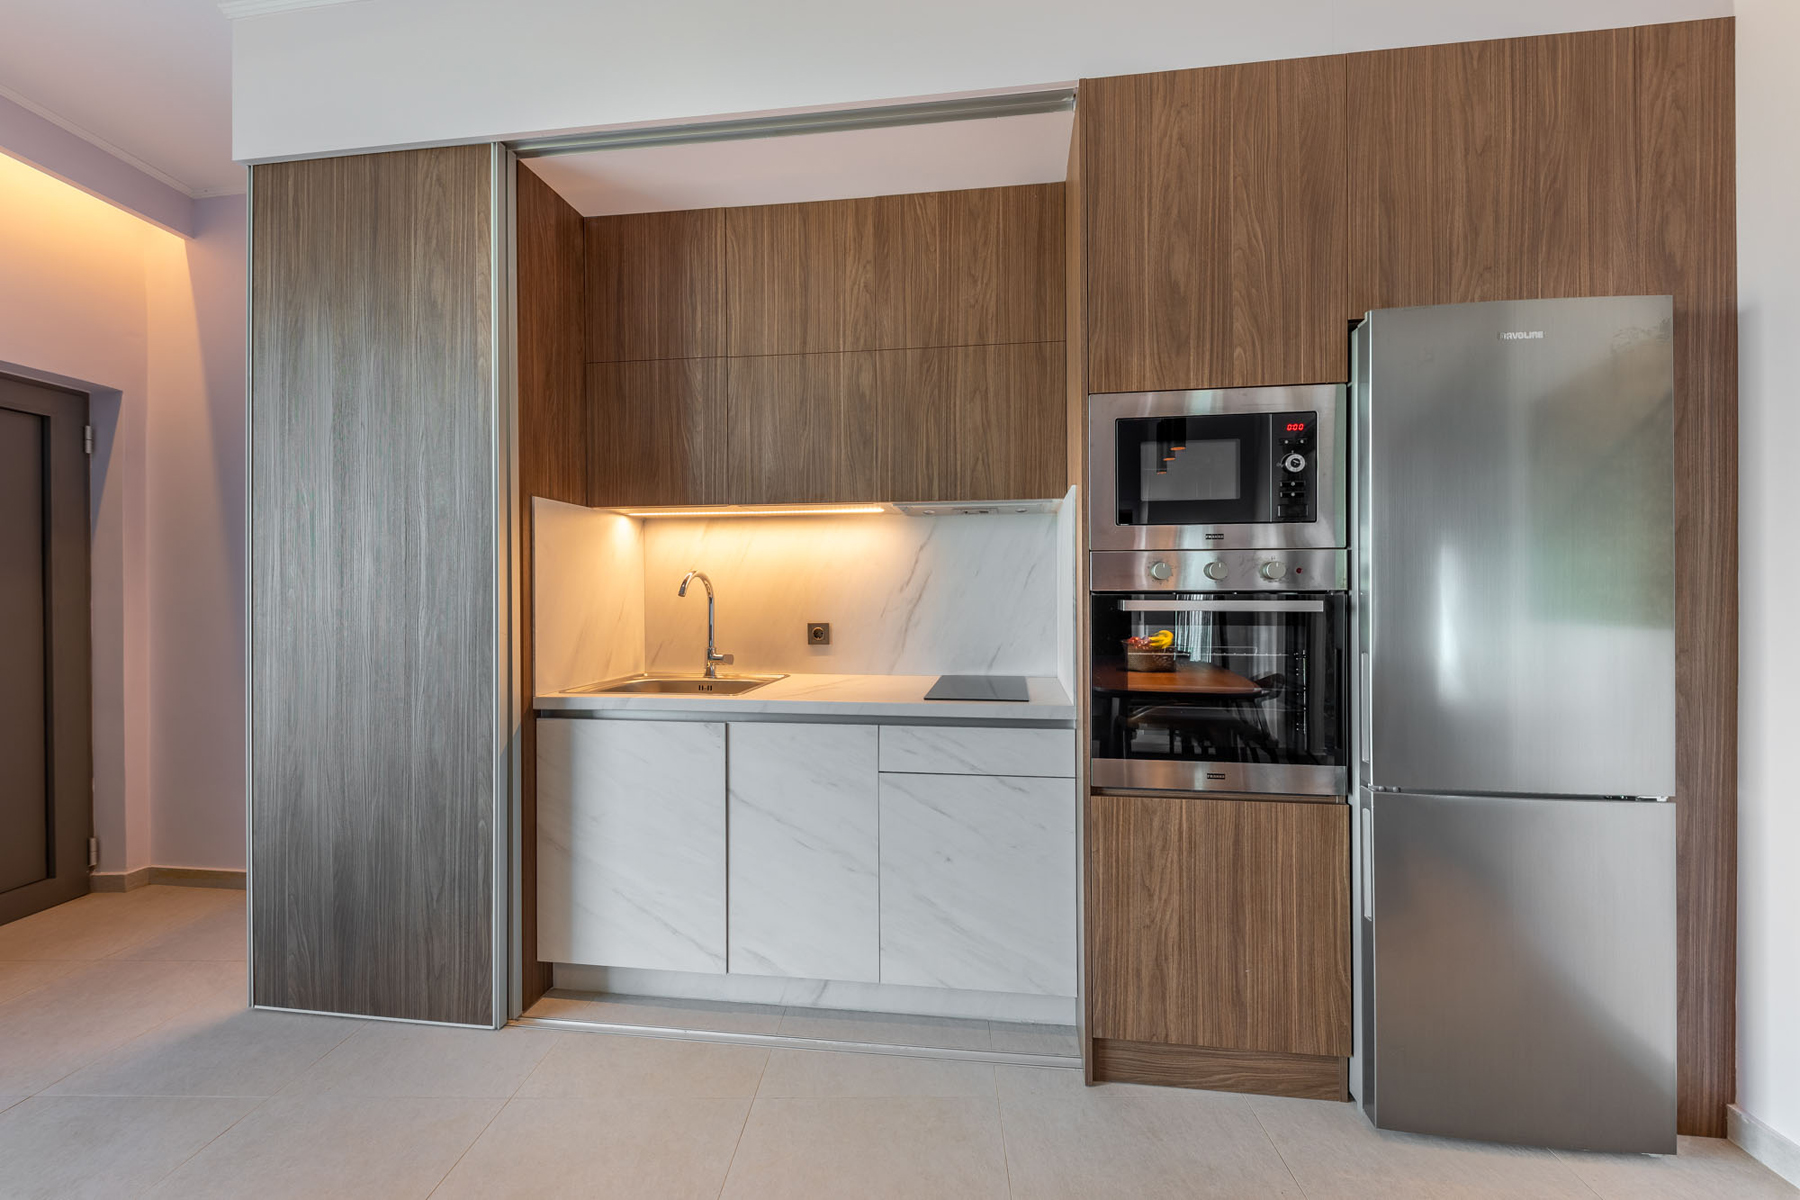 z luxury villa omega lefkada kitchen oven microwave wasgbasin kitchen